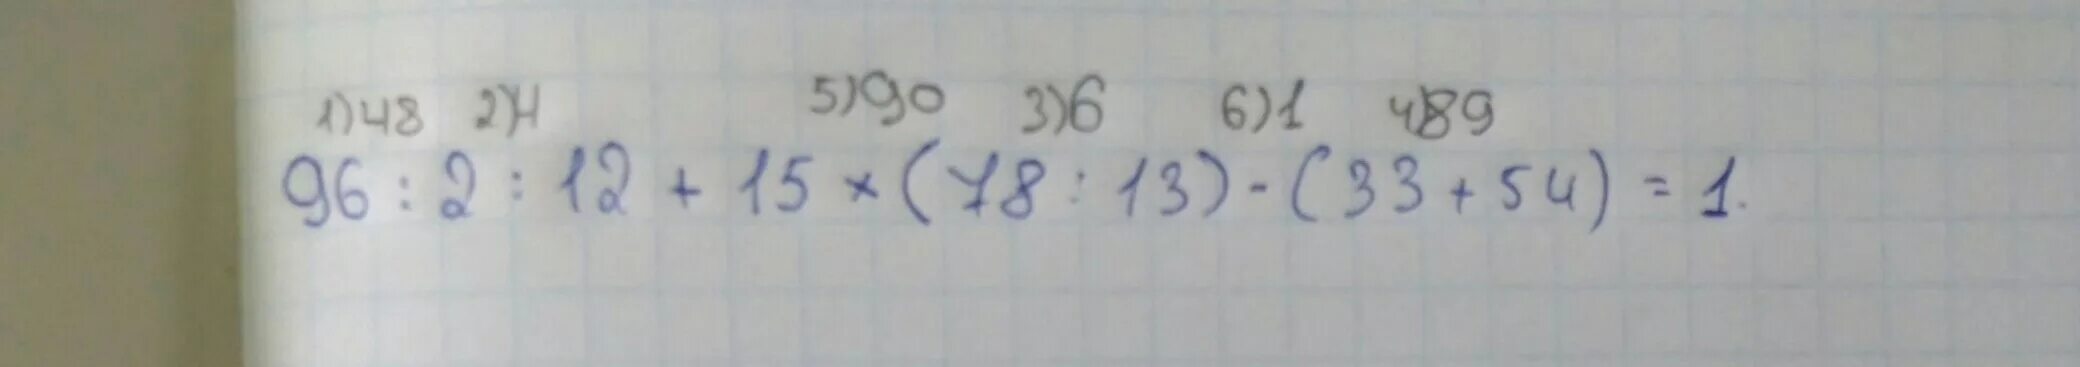 2 3 13 78. 96:2:12+15*(78:13)-(33+54):3. 96×(78÷13). Решить пример 96:2:12+15*(78:13)-(33+54):3. Составьте программу действий и вычисли - (17+43):2-9*8:4+70:(7+7)=.